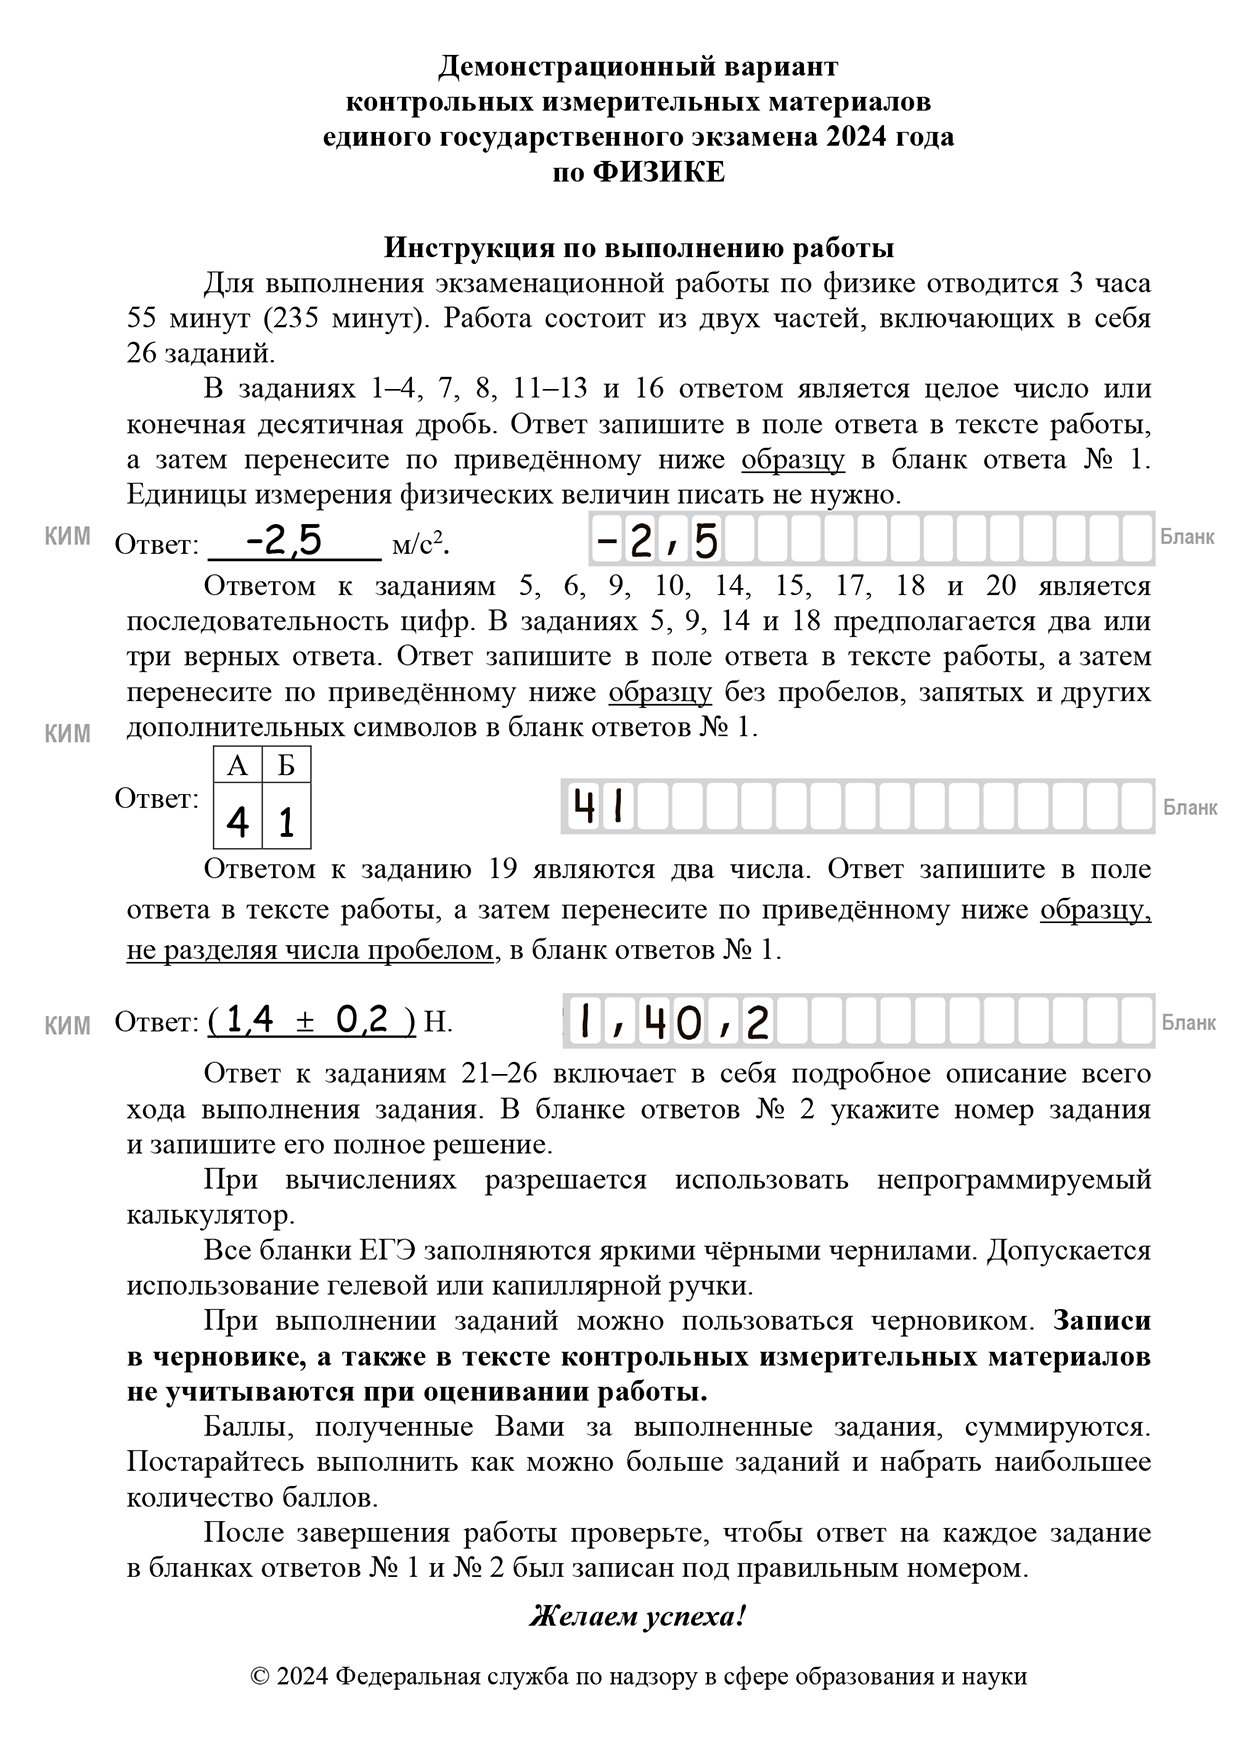 Инструкция, как надо заполнять экзаменационные бланки. Источник: fipi.ru